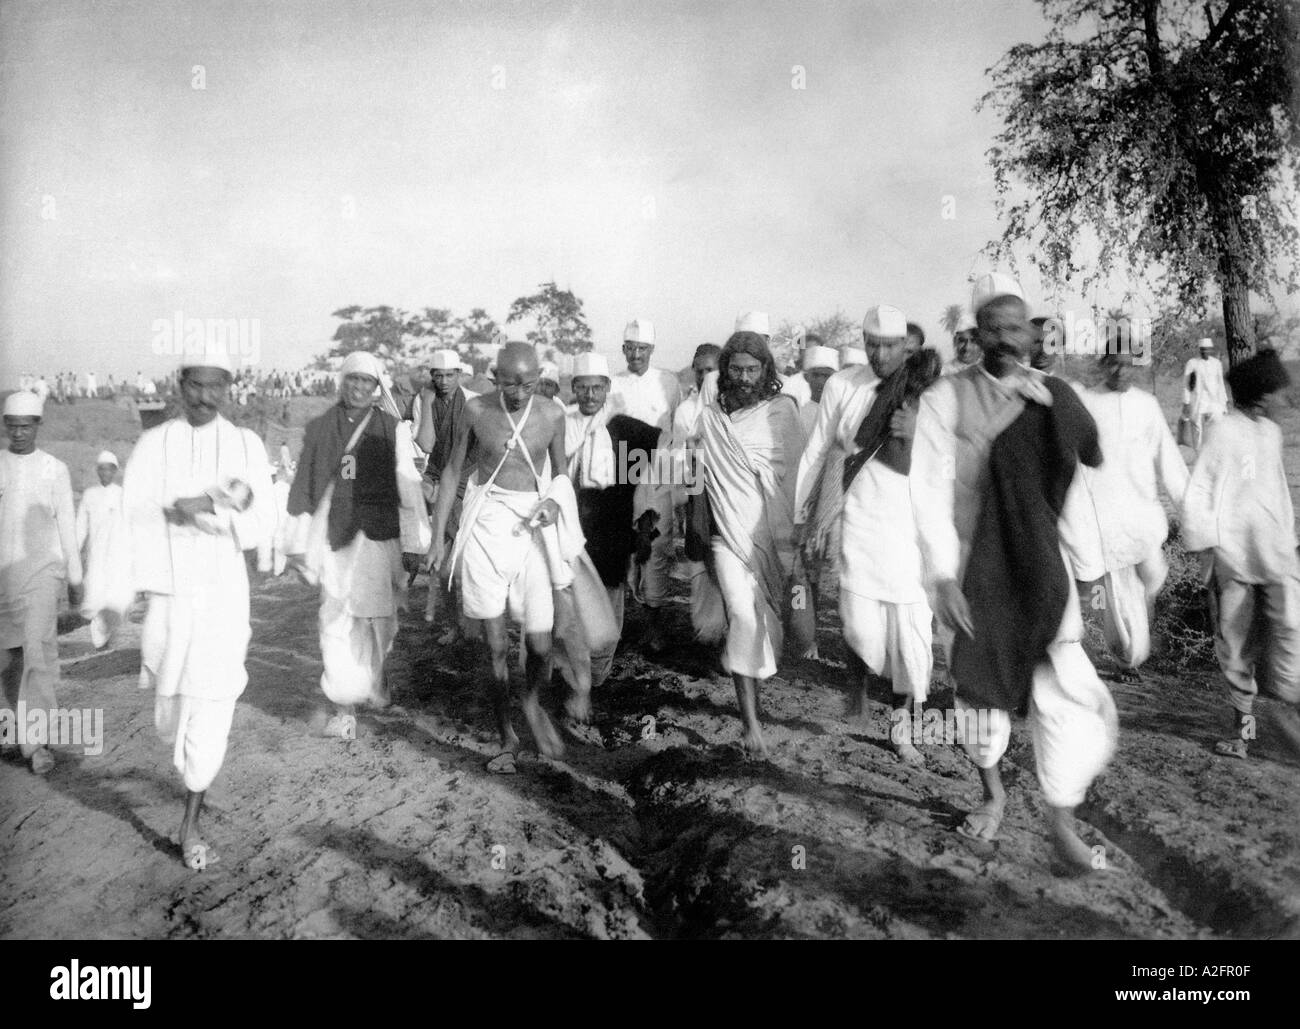 Mahatma Gandhi marschiert während der Salzagitation Satyagrah Dandi marschiert Protest gegen Indien Asien März 1930 altes Vintage 1900er Bild Stockfoto